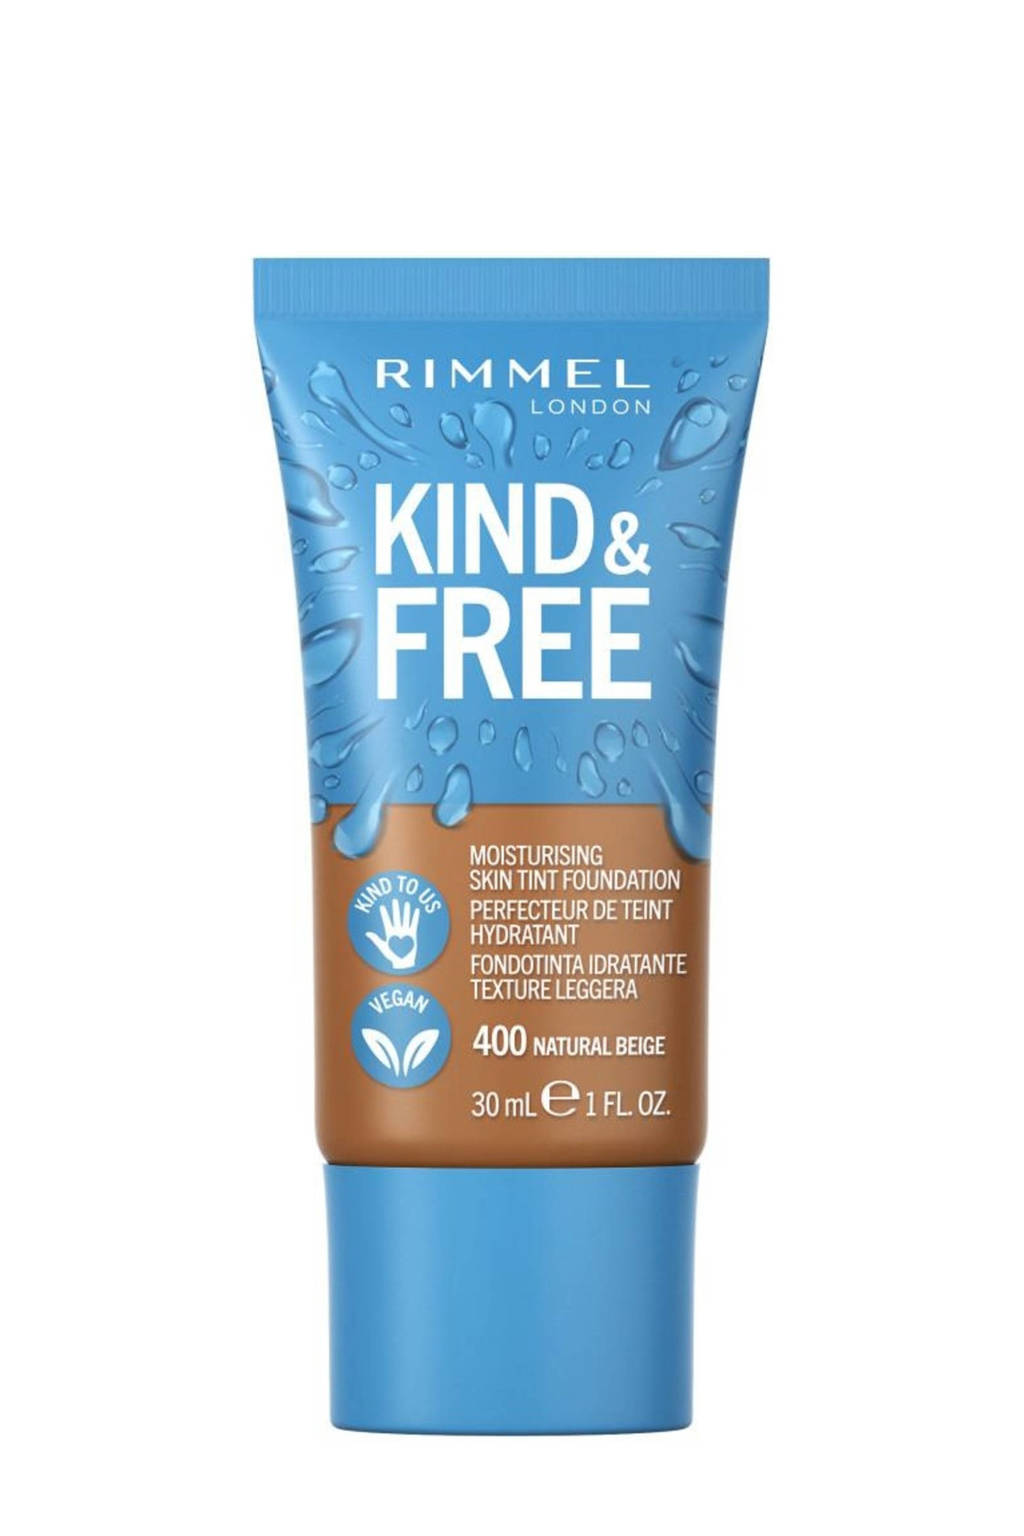 Rimmel London Kind & Free Vegan foundation - 400 Natural Beige